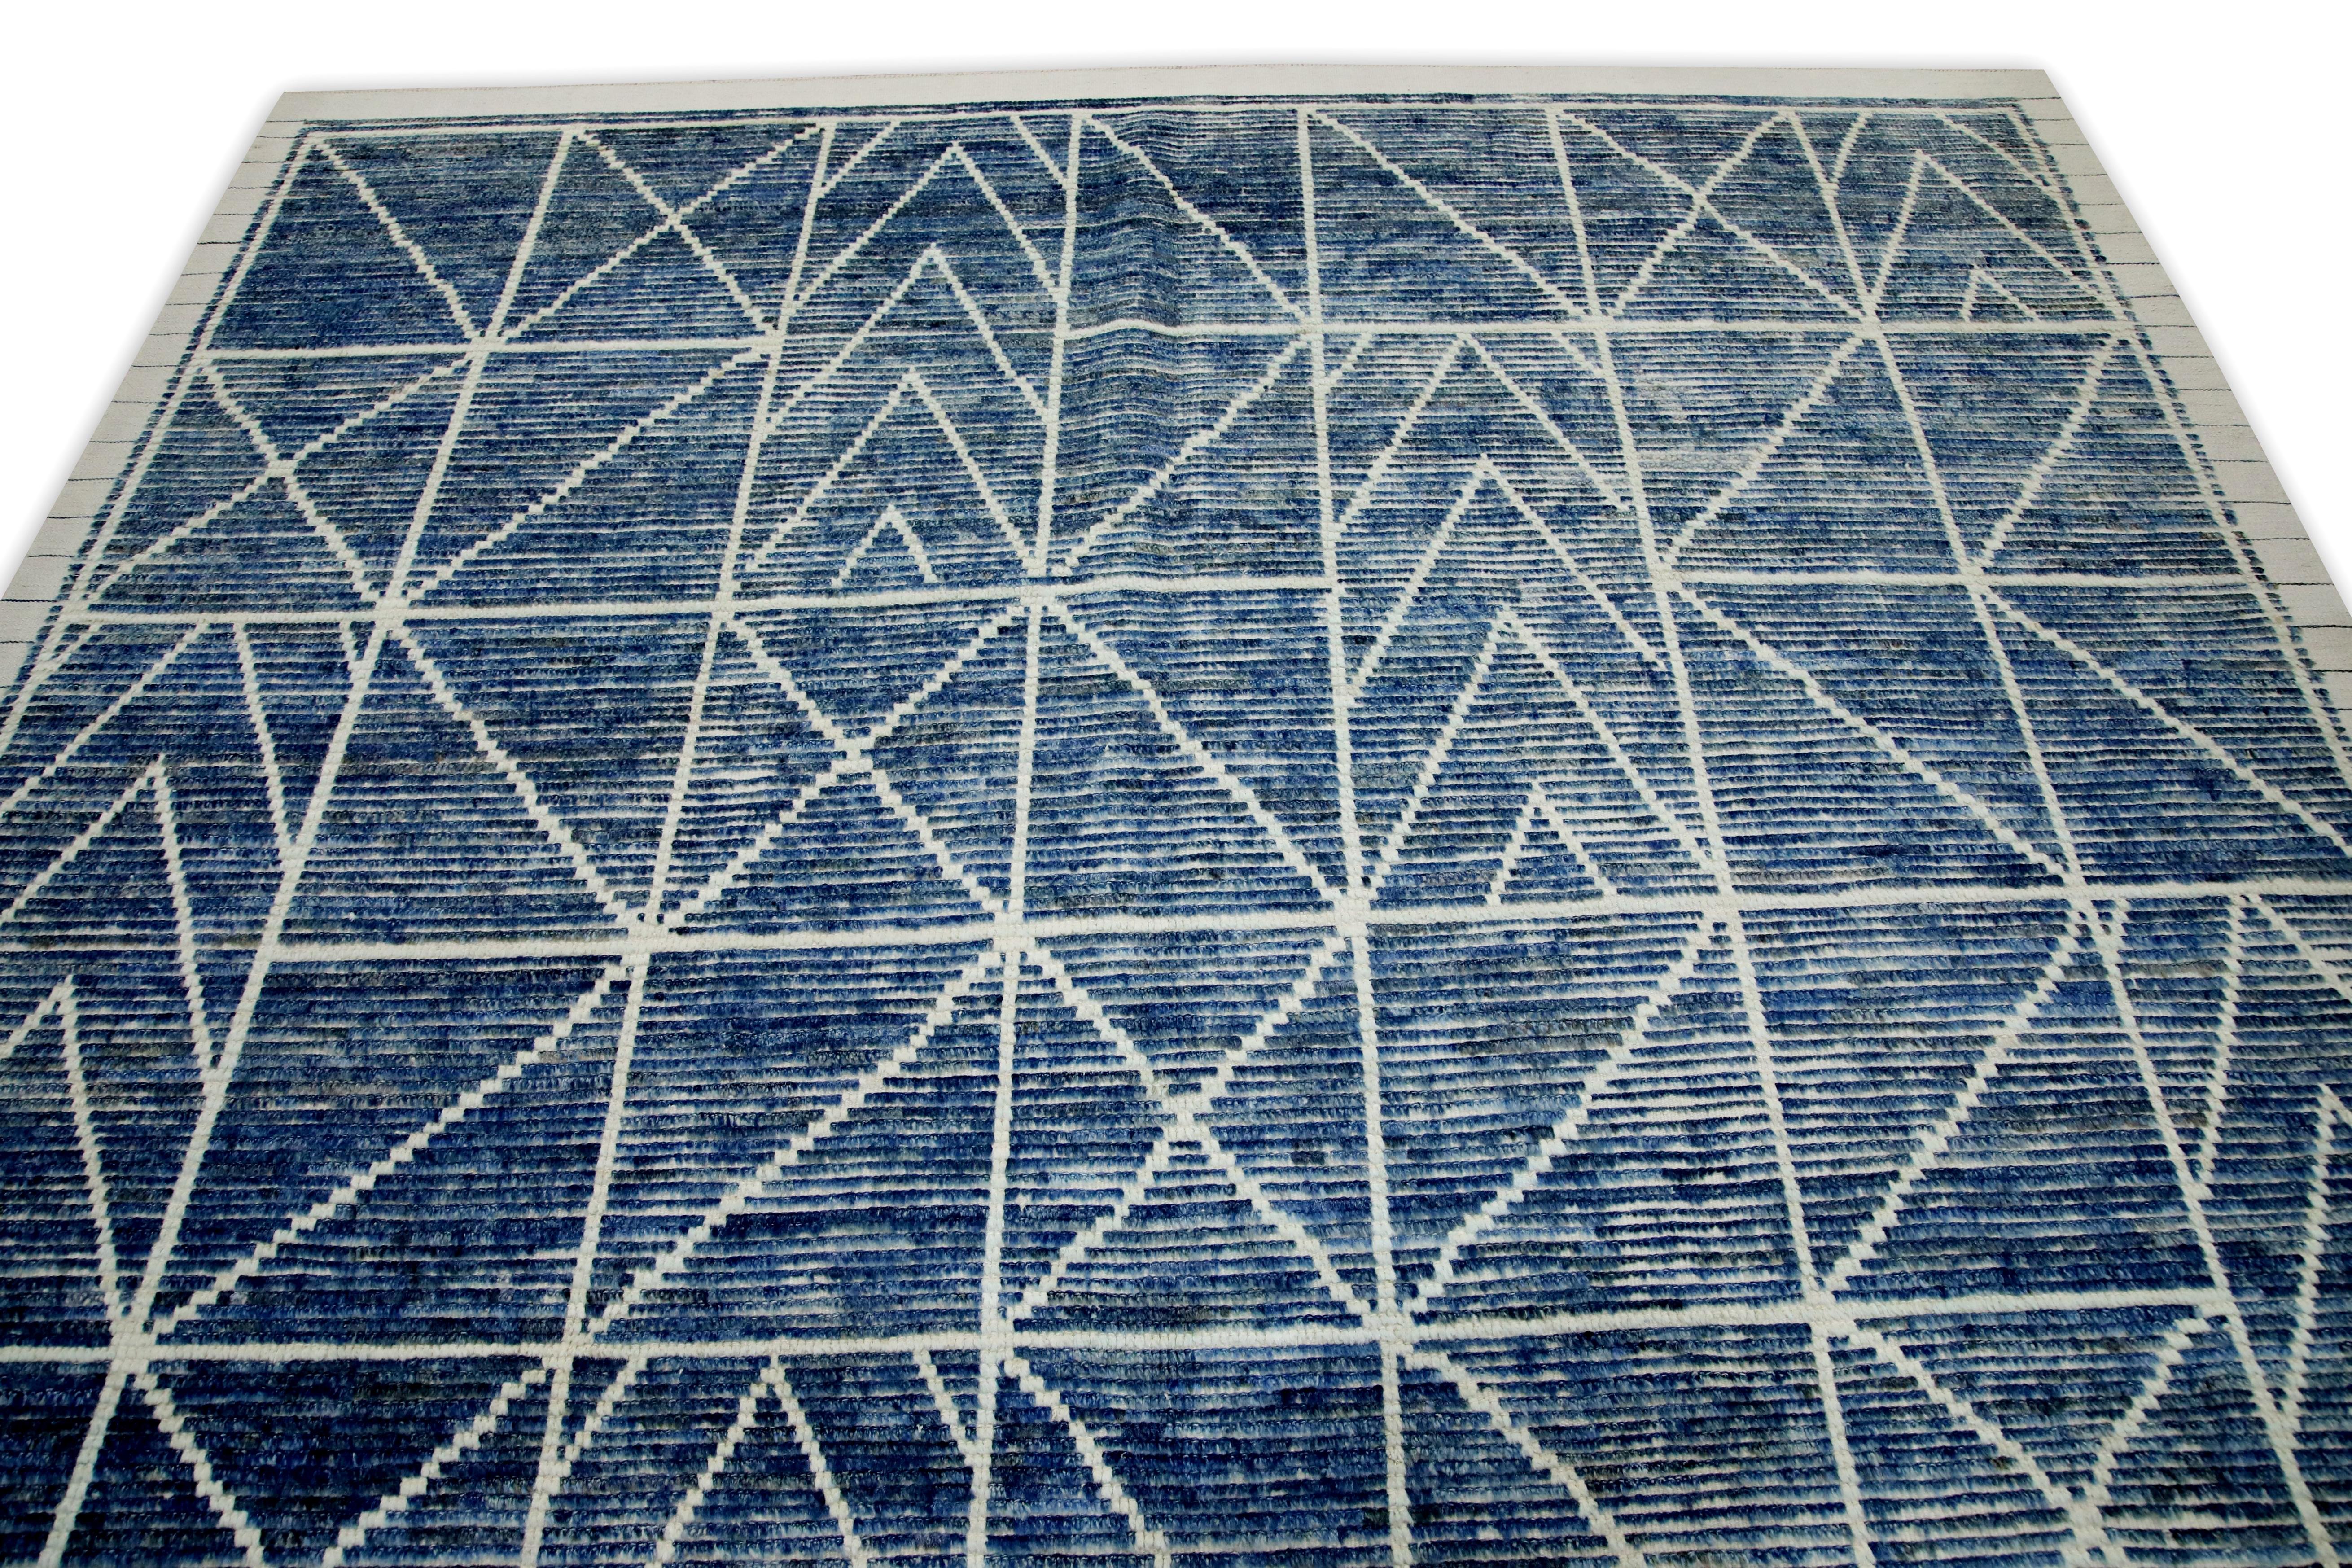 Turkish Blue Handmade Wool Tulu Rug in Geometric Design 8' x 10'4